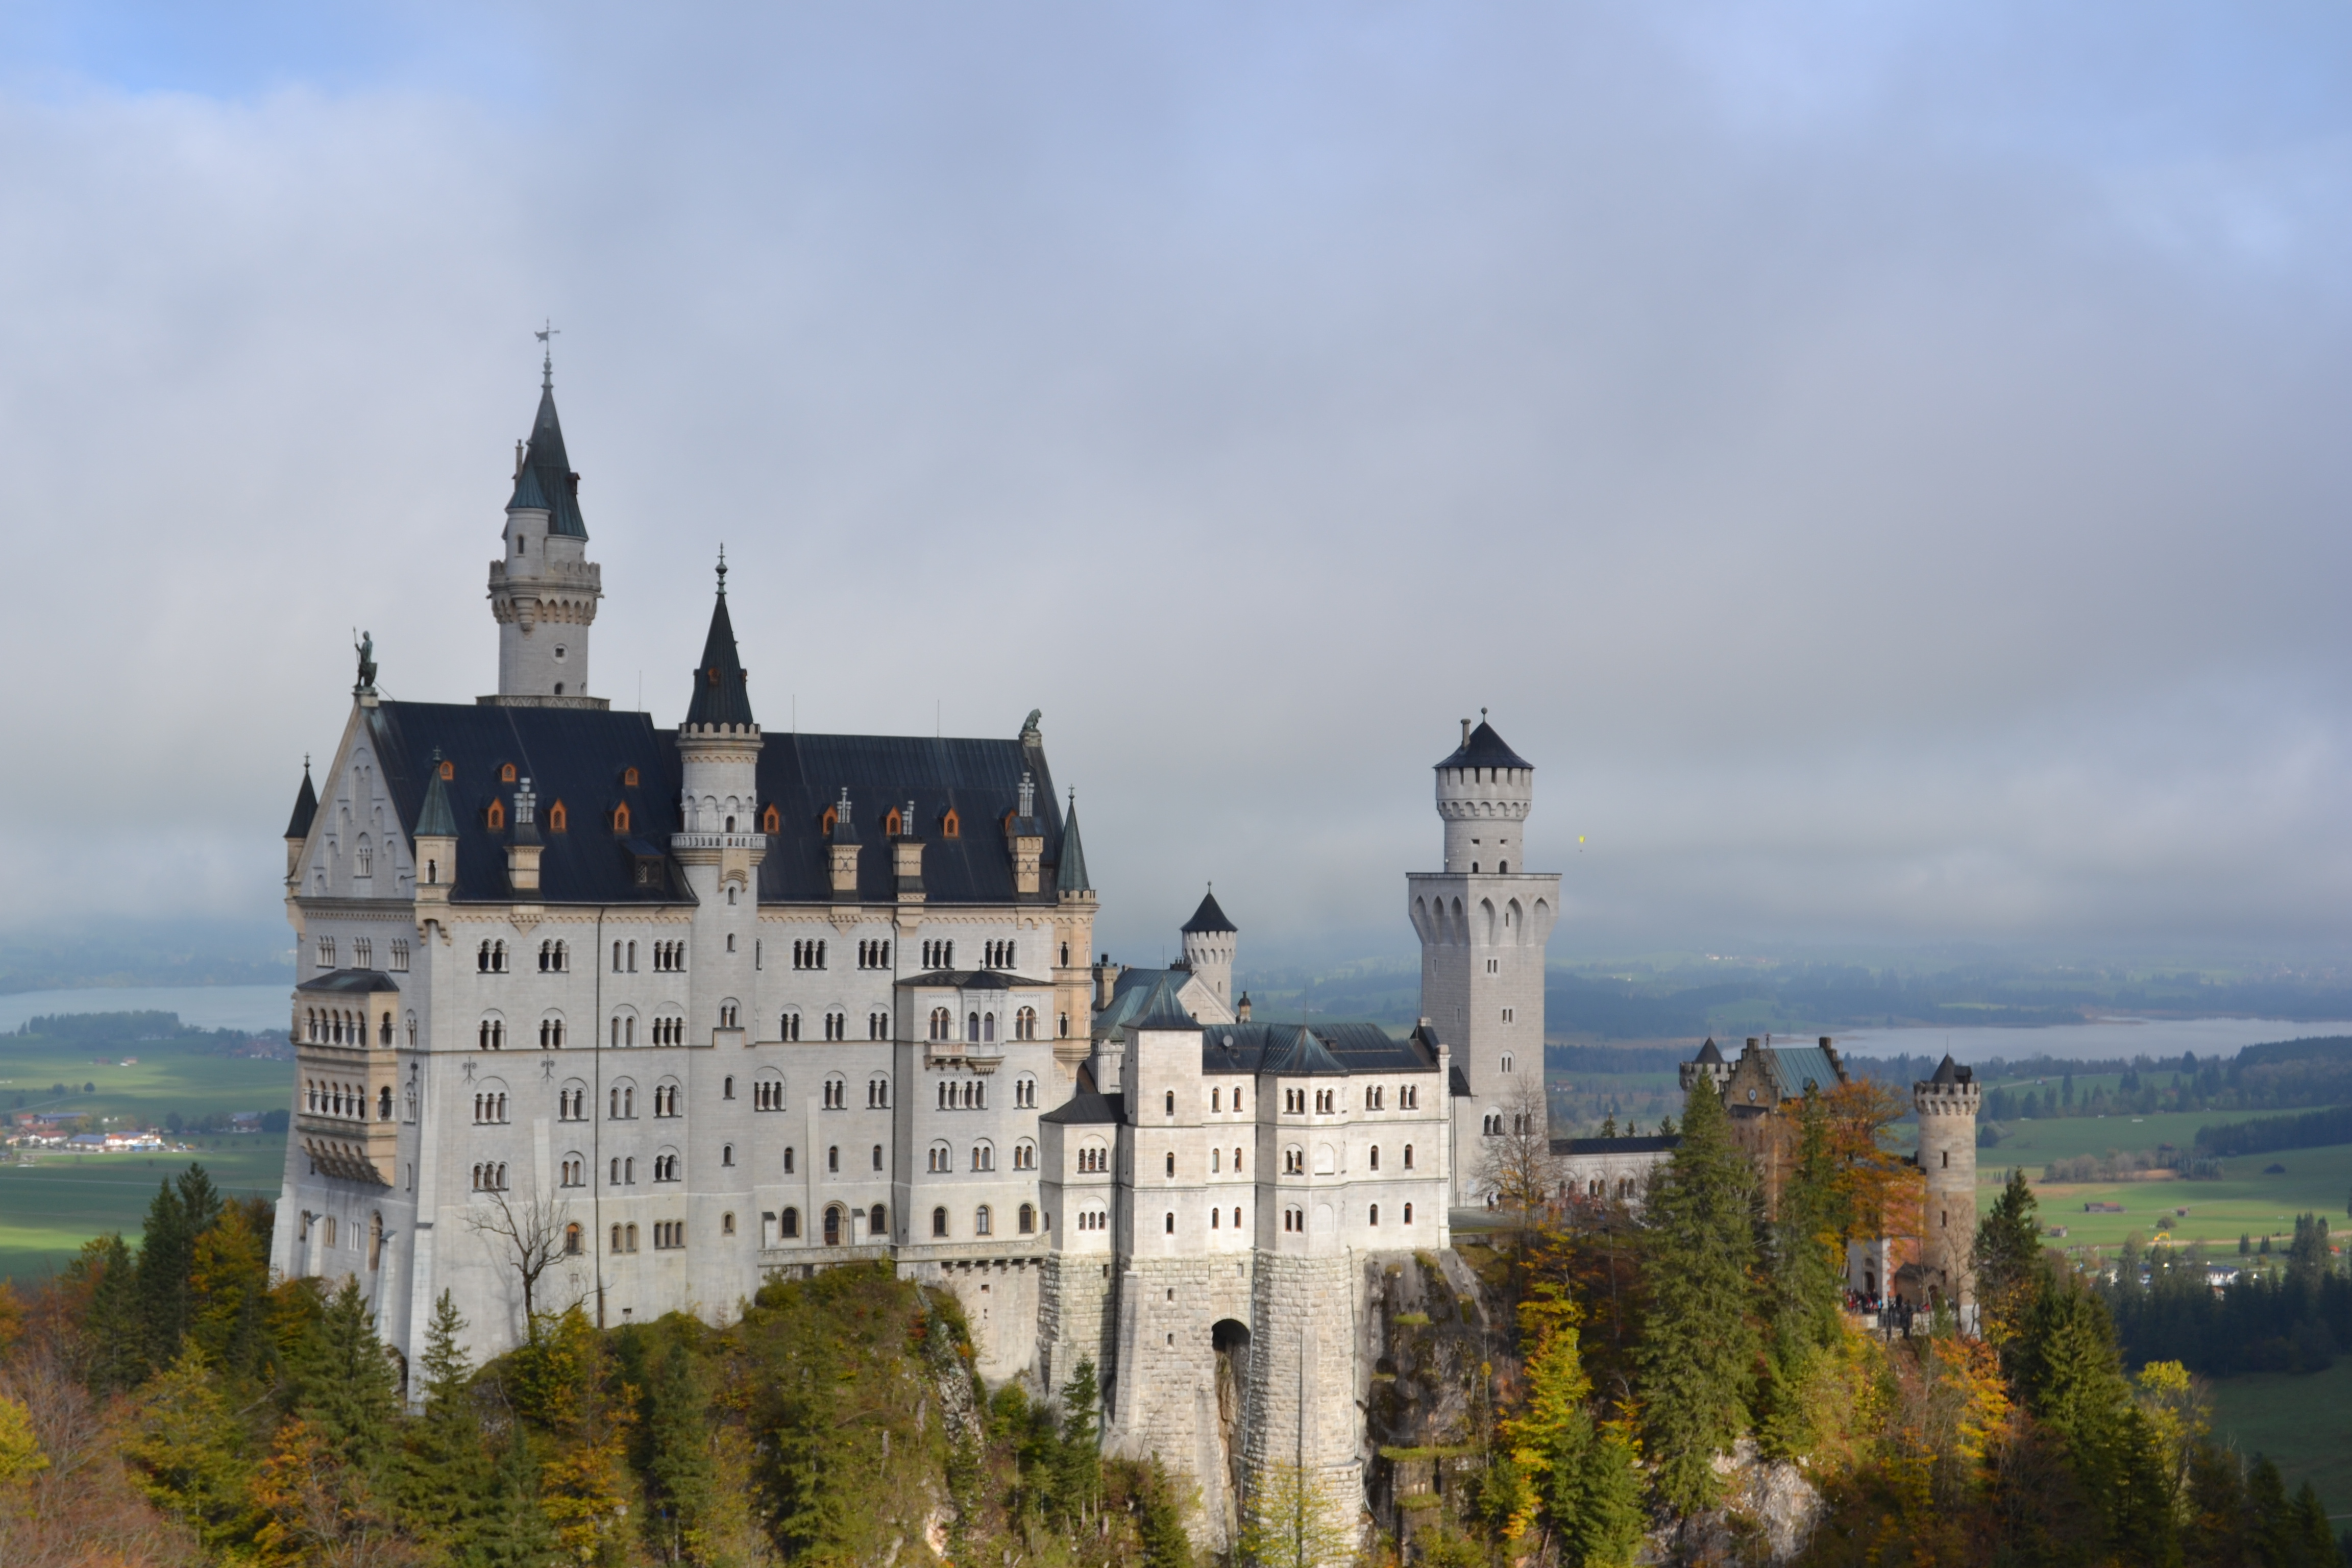 Cinderella Castle - Neuschwanstein Castle. Bavaria Germany